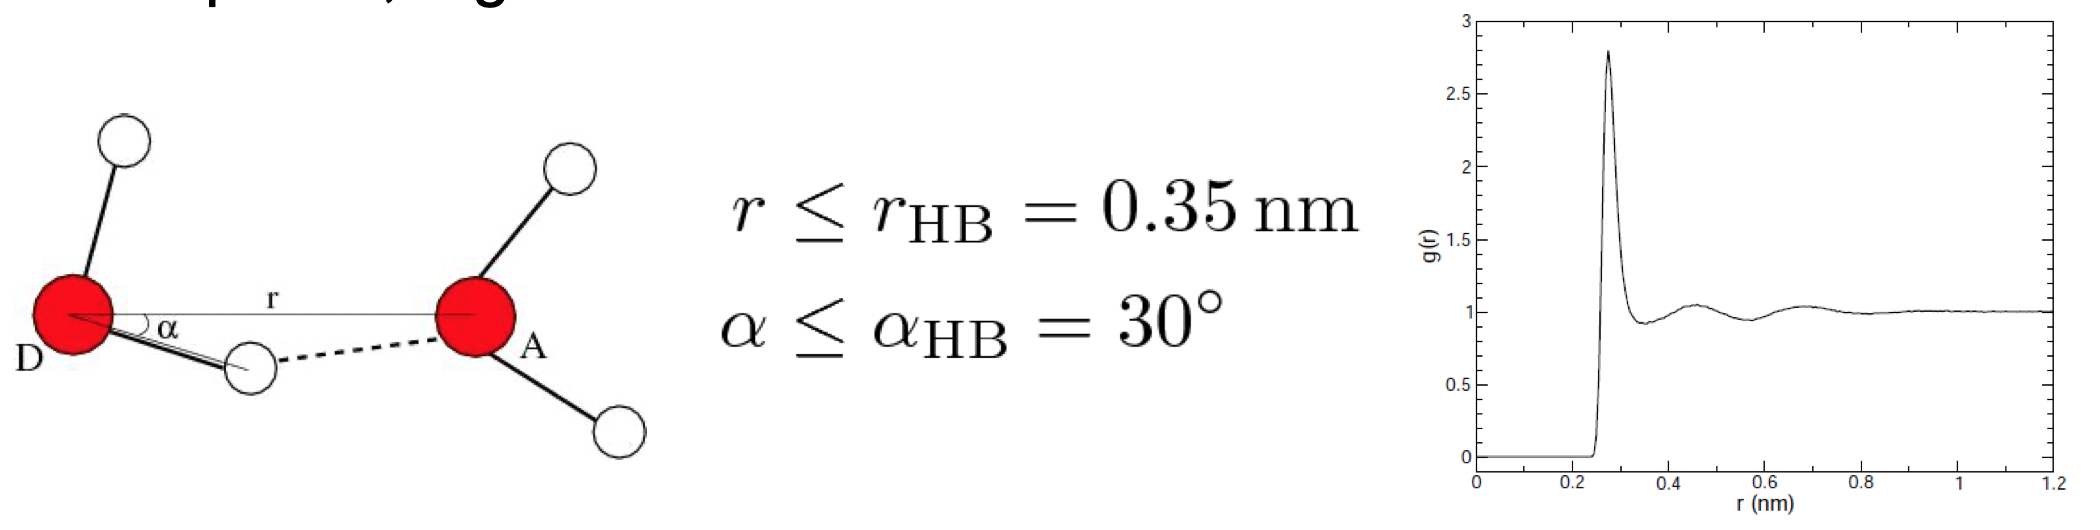 Hydrogen Bond Analysis